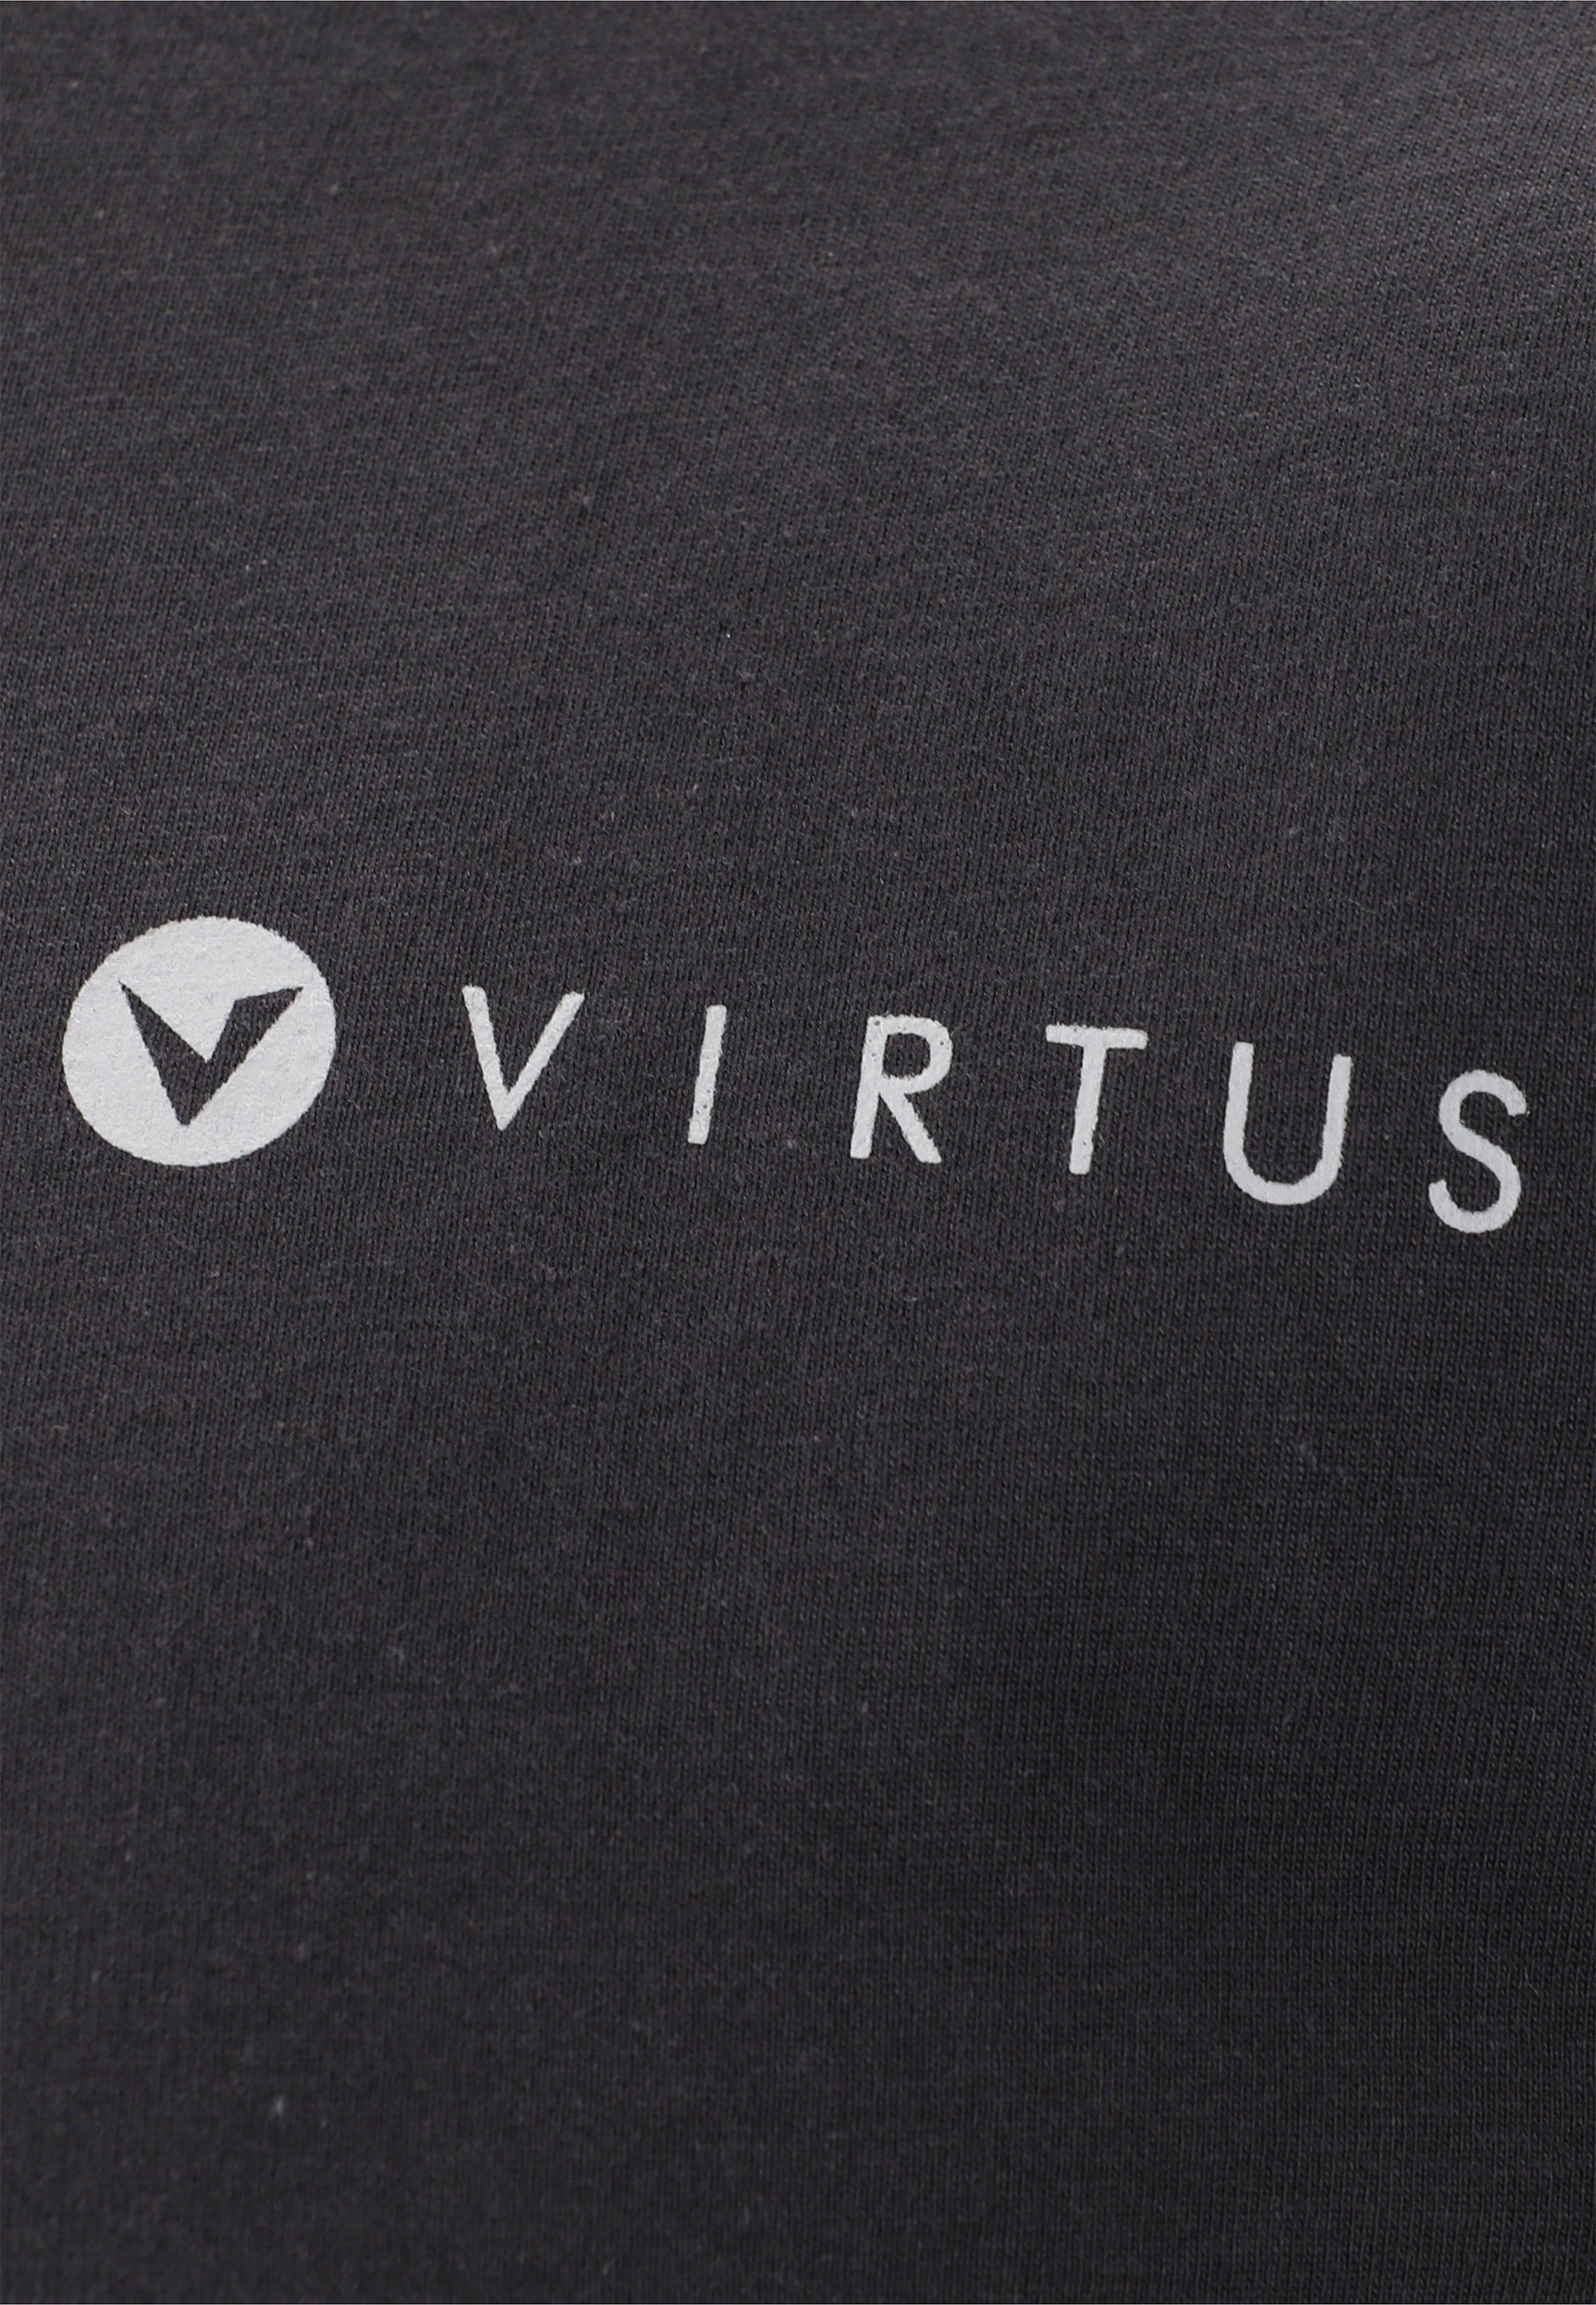 Virtus Funktionsshirt Saulto Markenprint schwarz mit kleinem